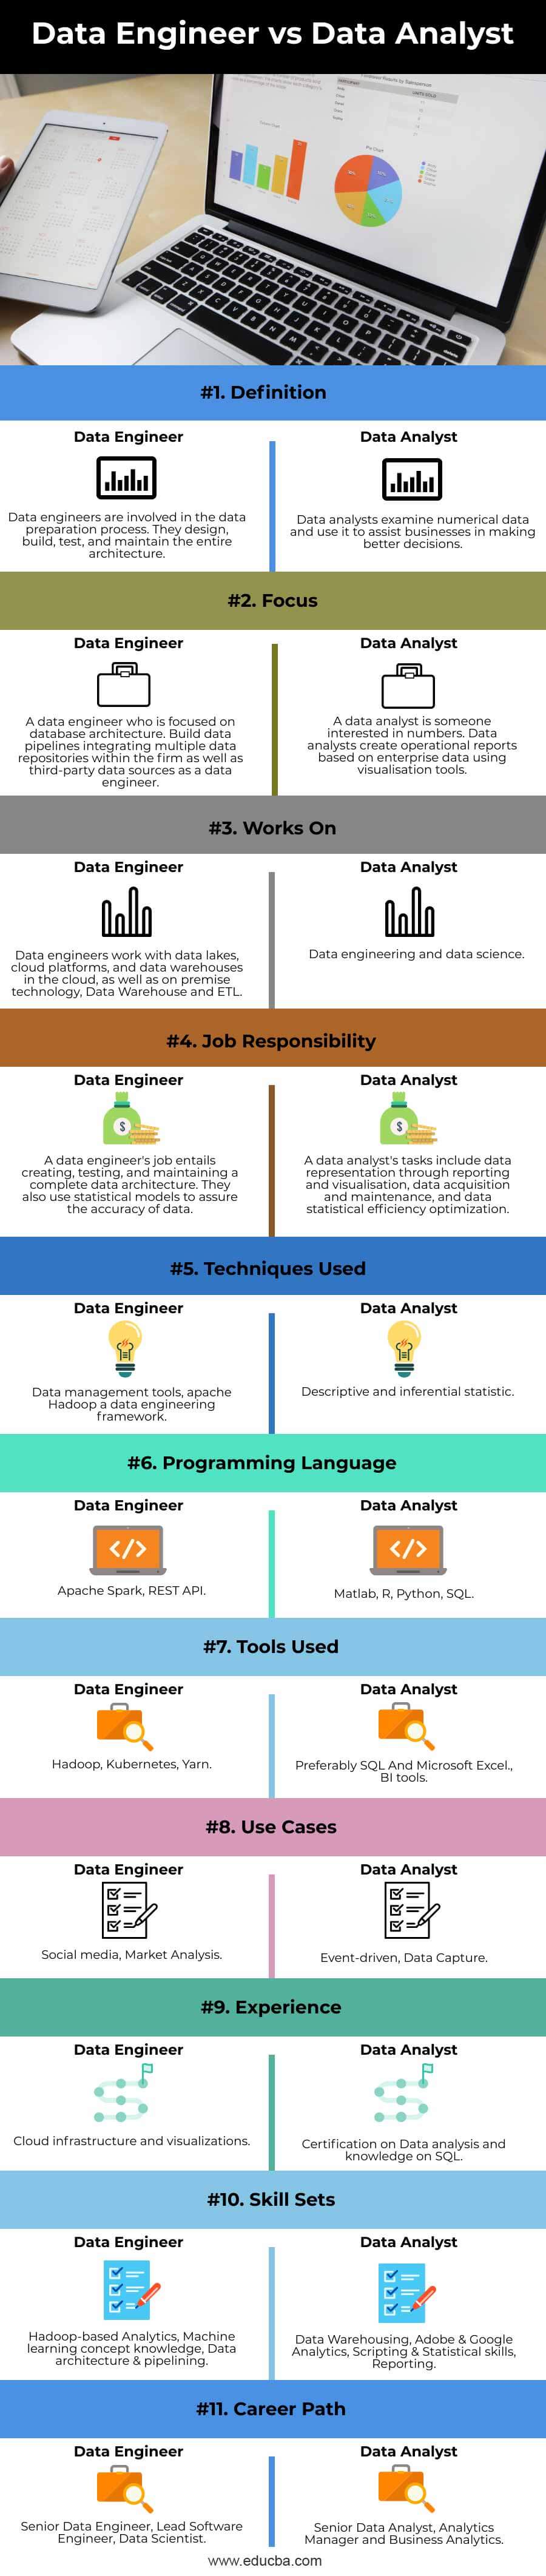 Data-Engineer-vs-Data-Analyst-info